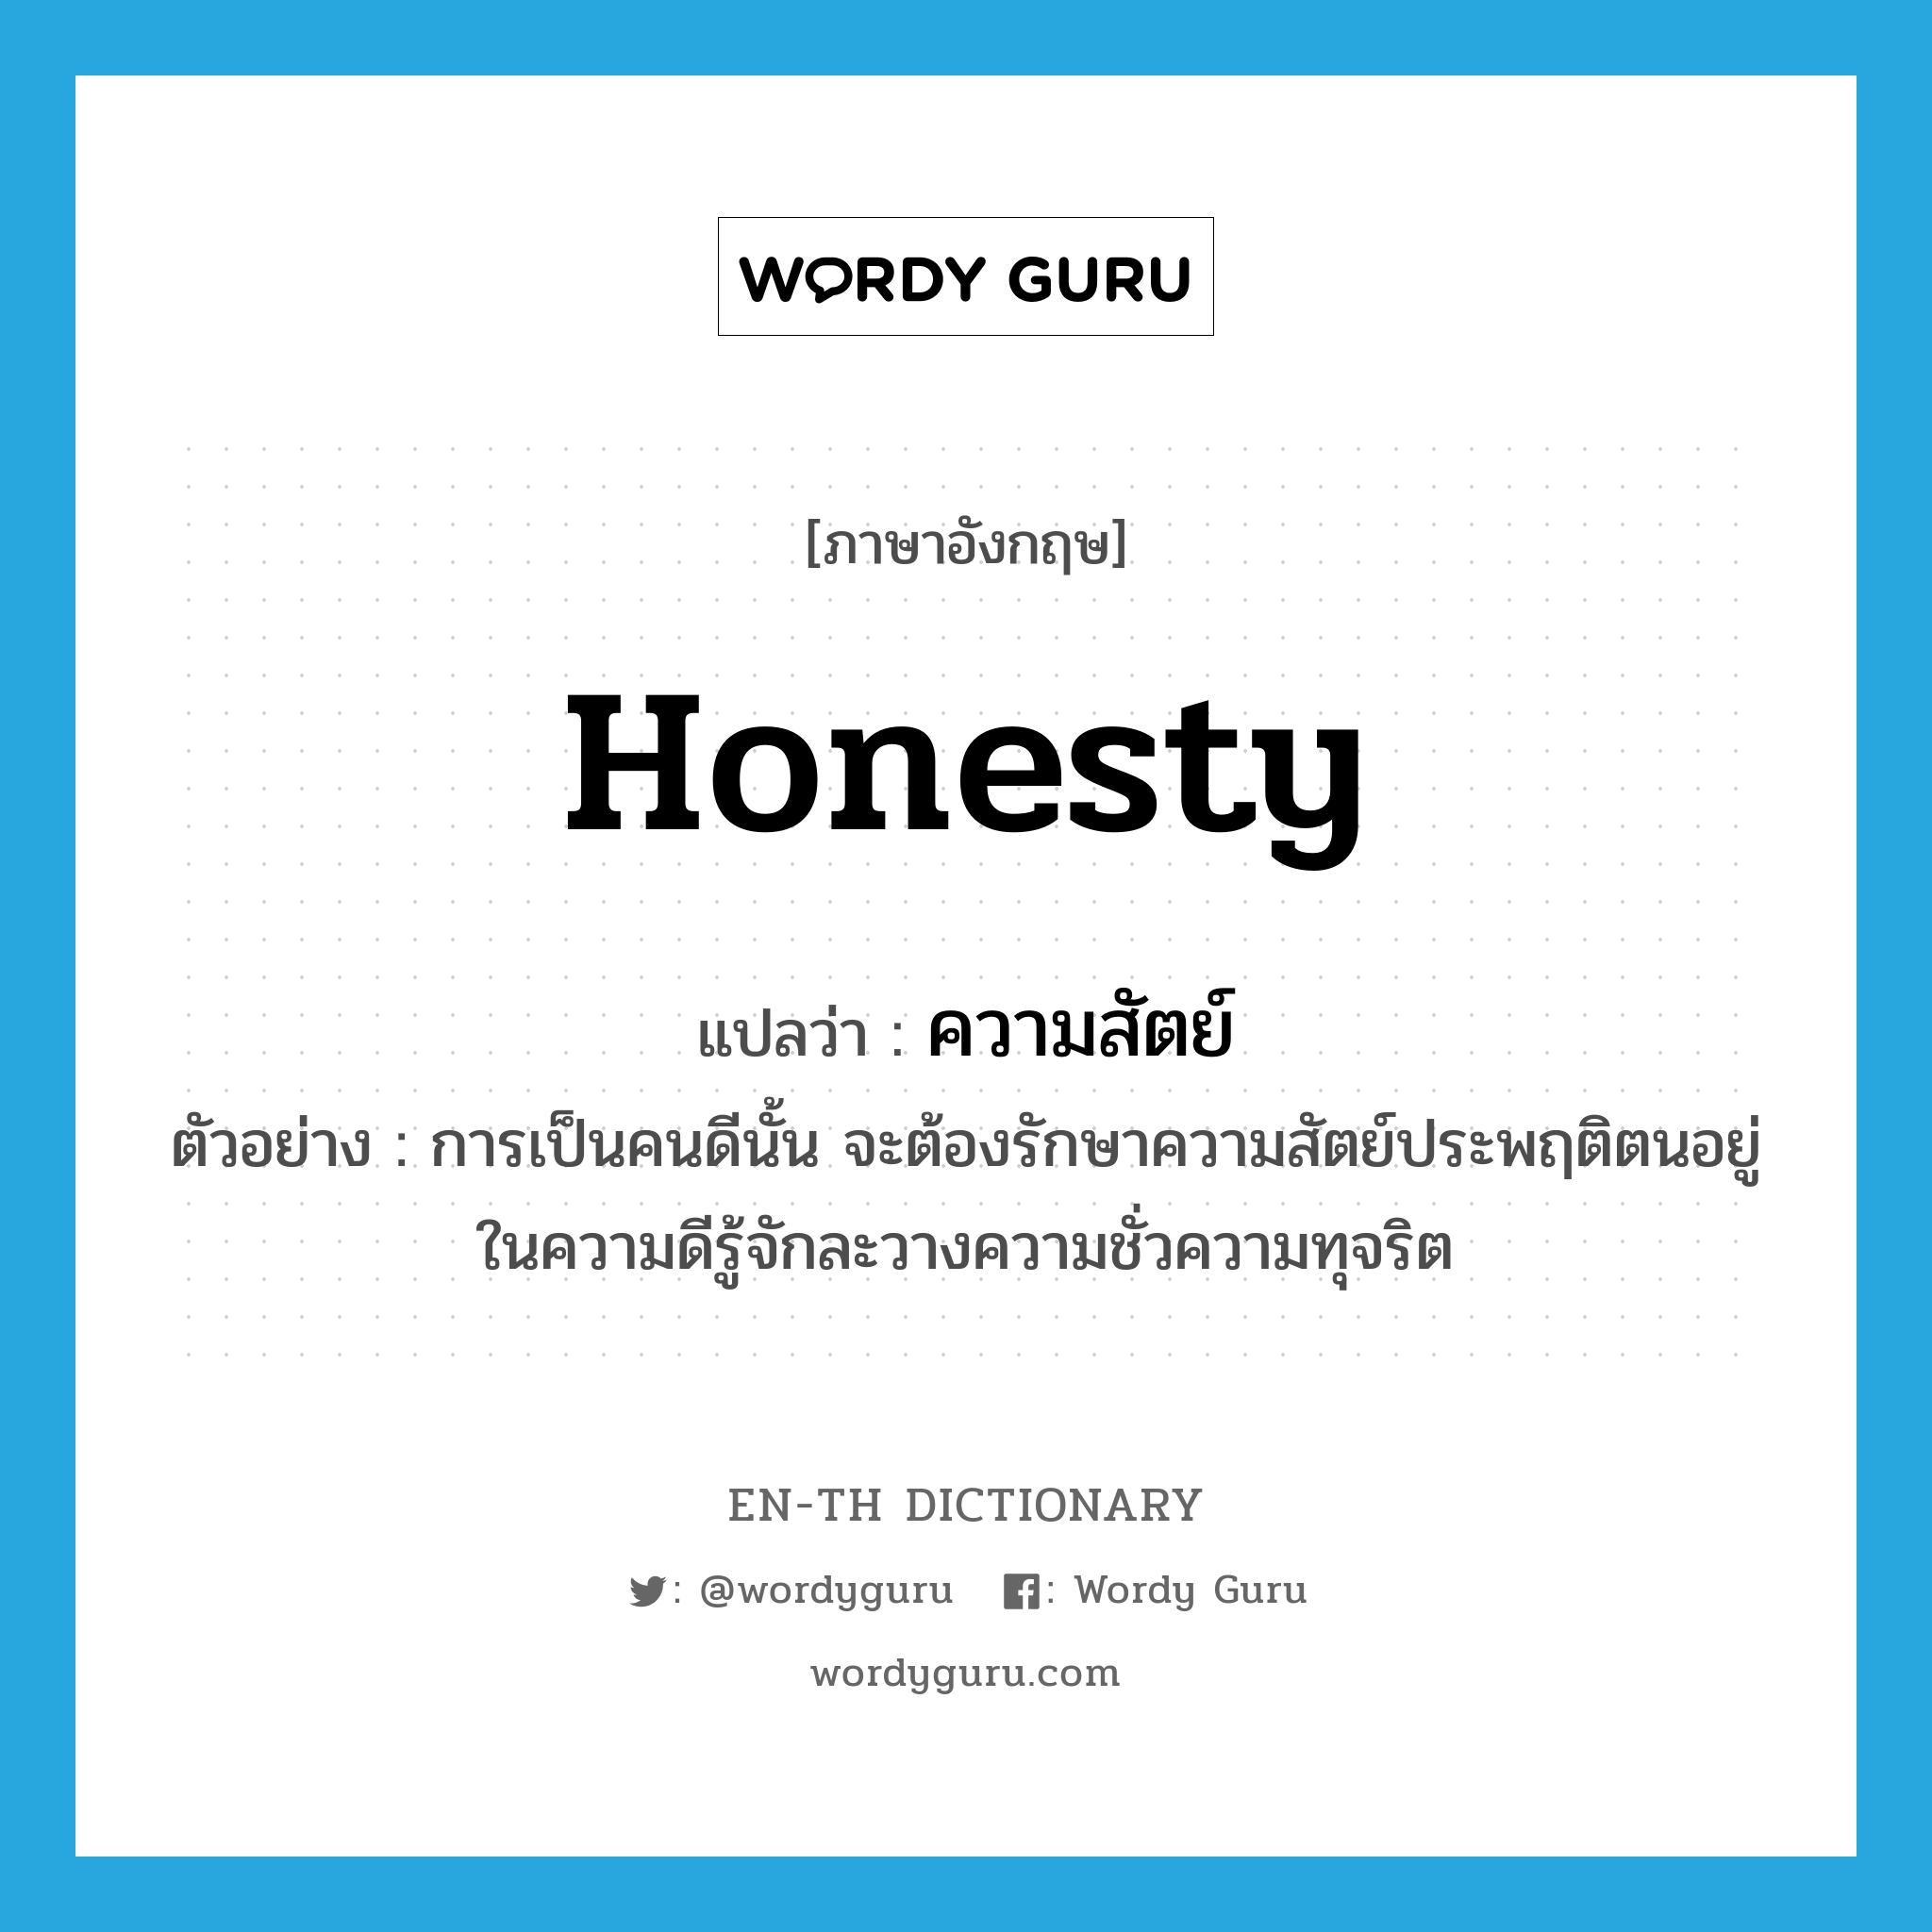 honesty แปลว่า?, คำศัพท์ภาษาอังกฤษ honesty แปลว่า ความสัตย์ ประเภท N ตัวอย่าง การเป็นคนดีนั้น จะต้องรักษาความสัตย์ประพฤติตนอยู่ในความดีรู้จักละวางความชั่วความทุจริต หมวด N